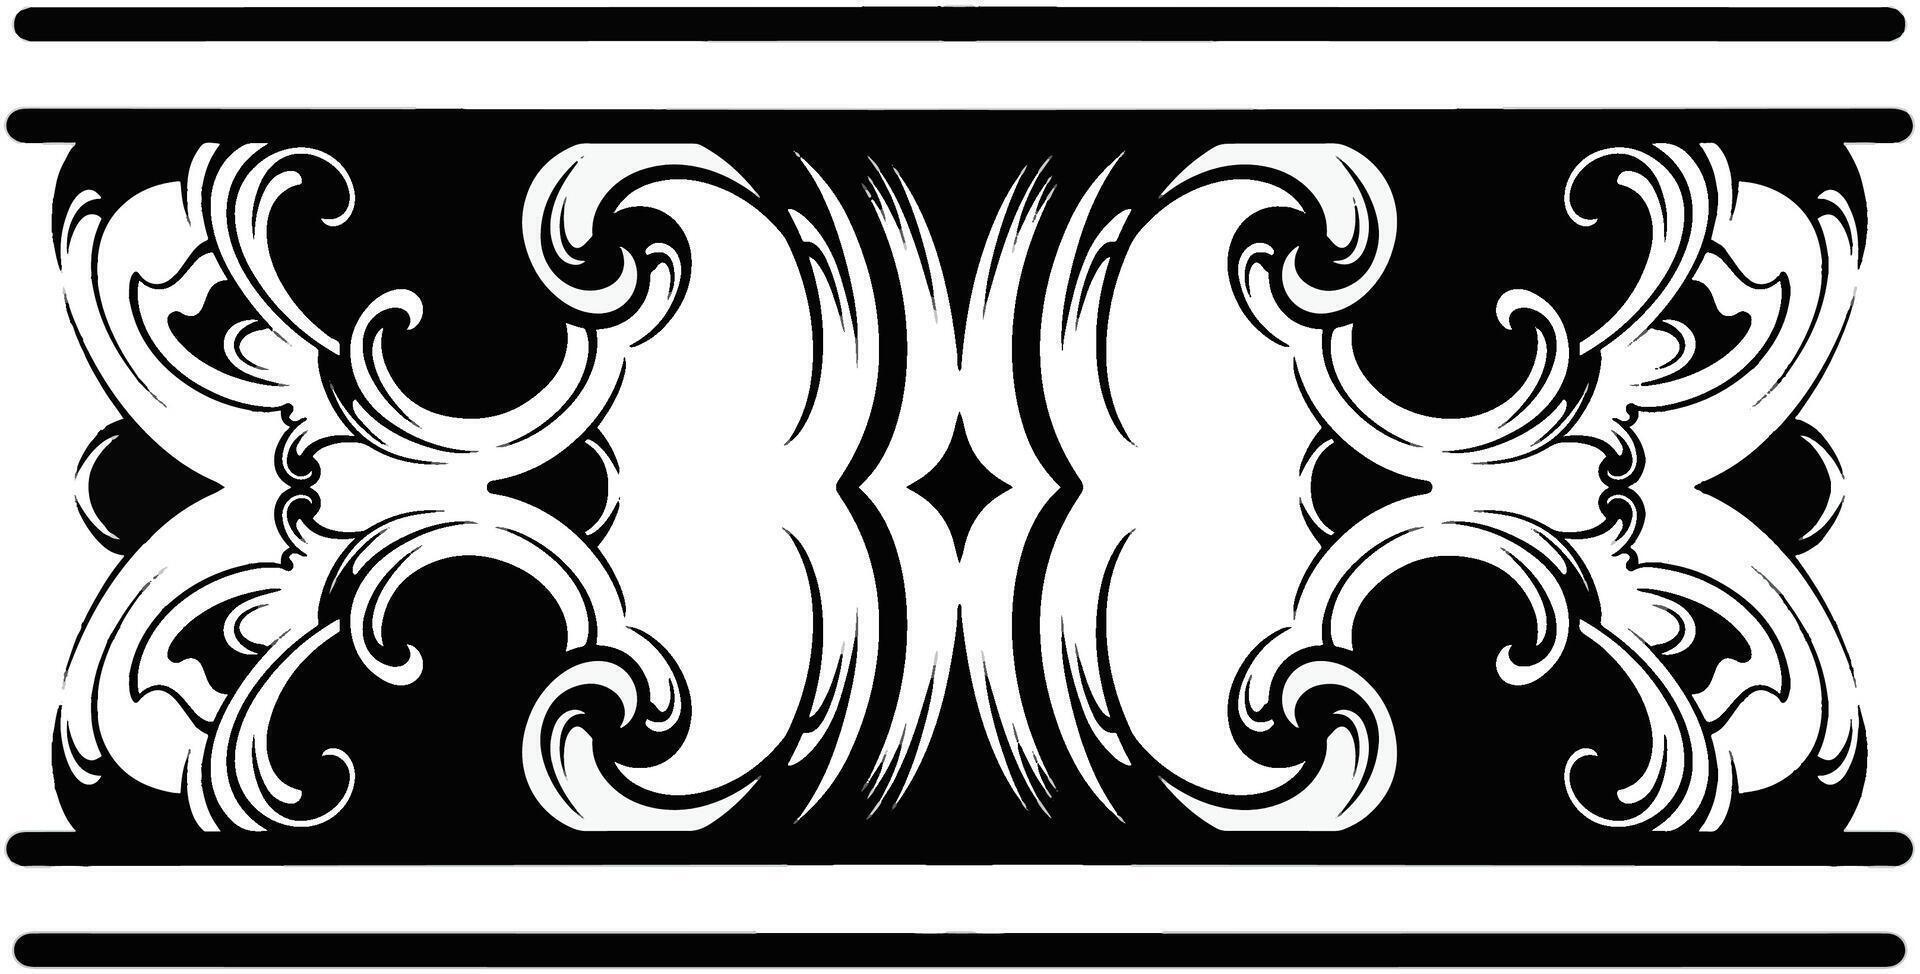 conception tribale de mandala polynésien, ornement de vecteur de modèle de style de tatouage hawaïen géométrique en noir et blanc